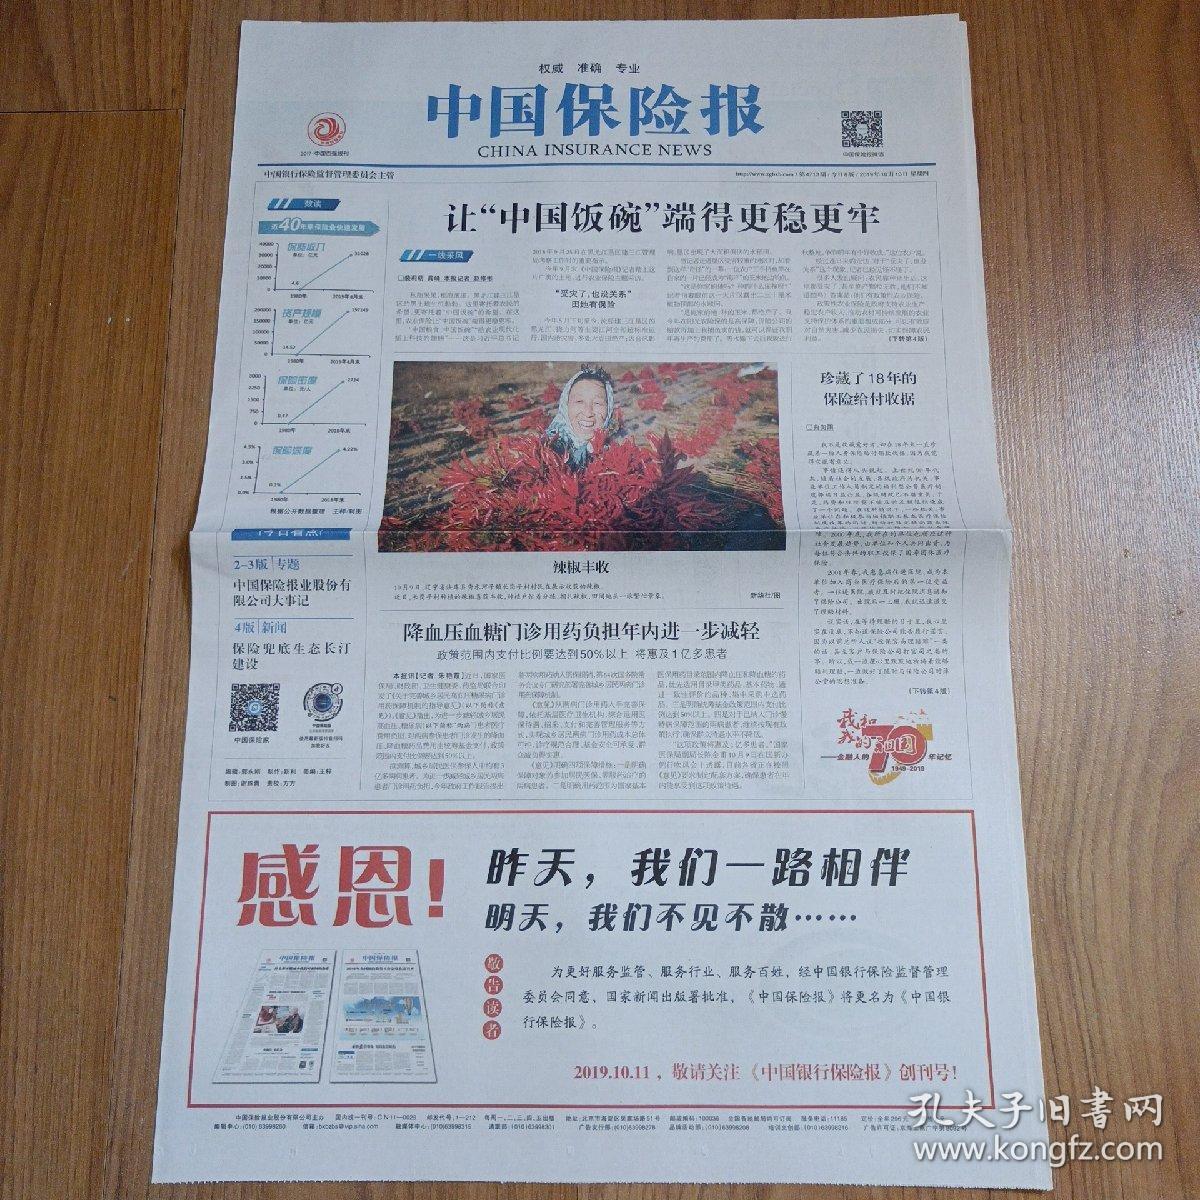 中国保险报2019年10月10日停刊号